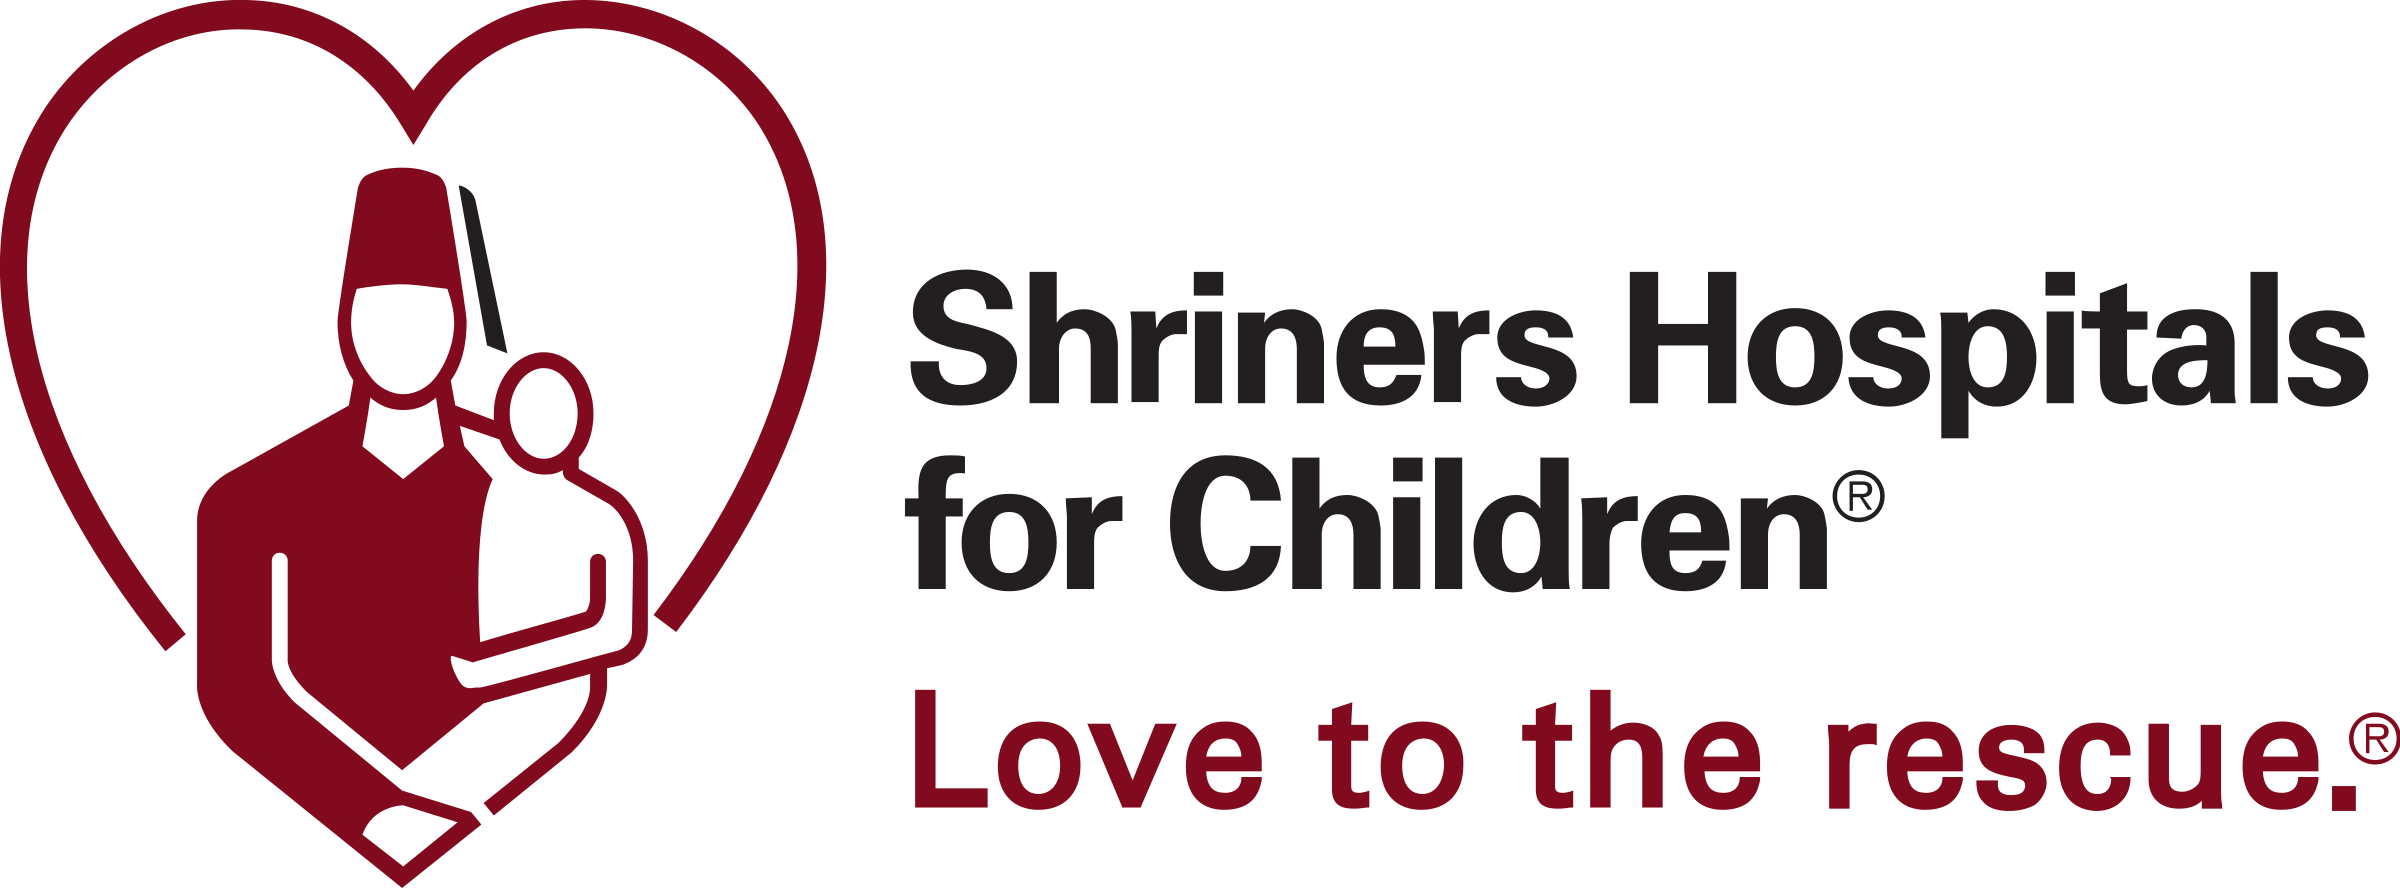 Shriners Logo - Shriners Hospitals for Children Logo PNG Transparent & SVG Vector ...